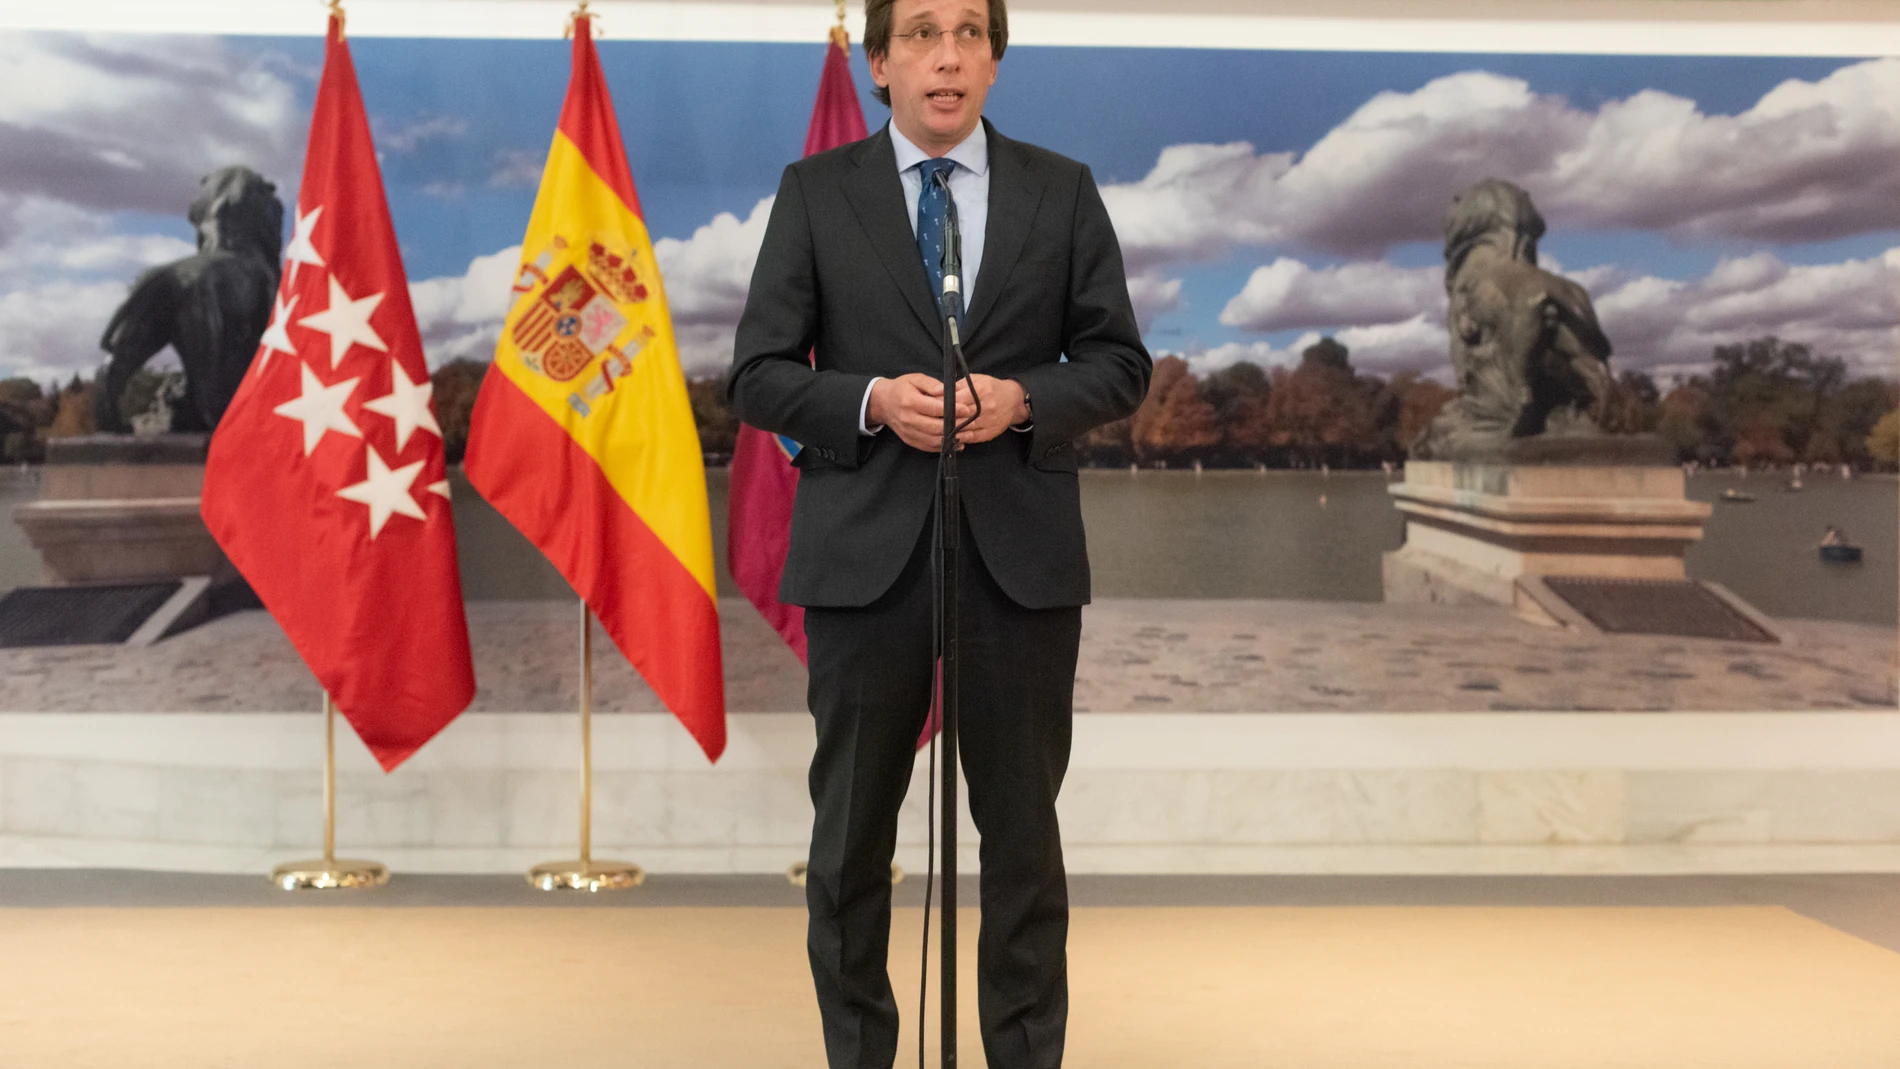 El alcalde de Madrid, José Luis Martínez-Almeida, compareció hoy en una rueda de prensa